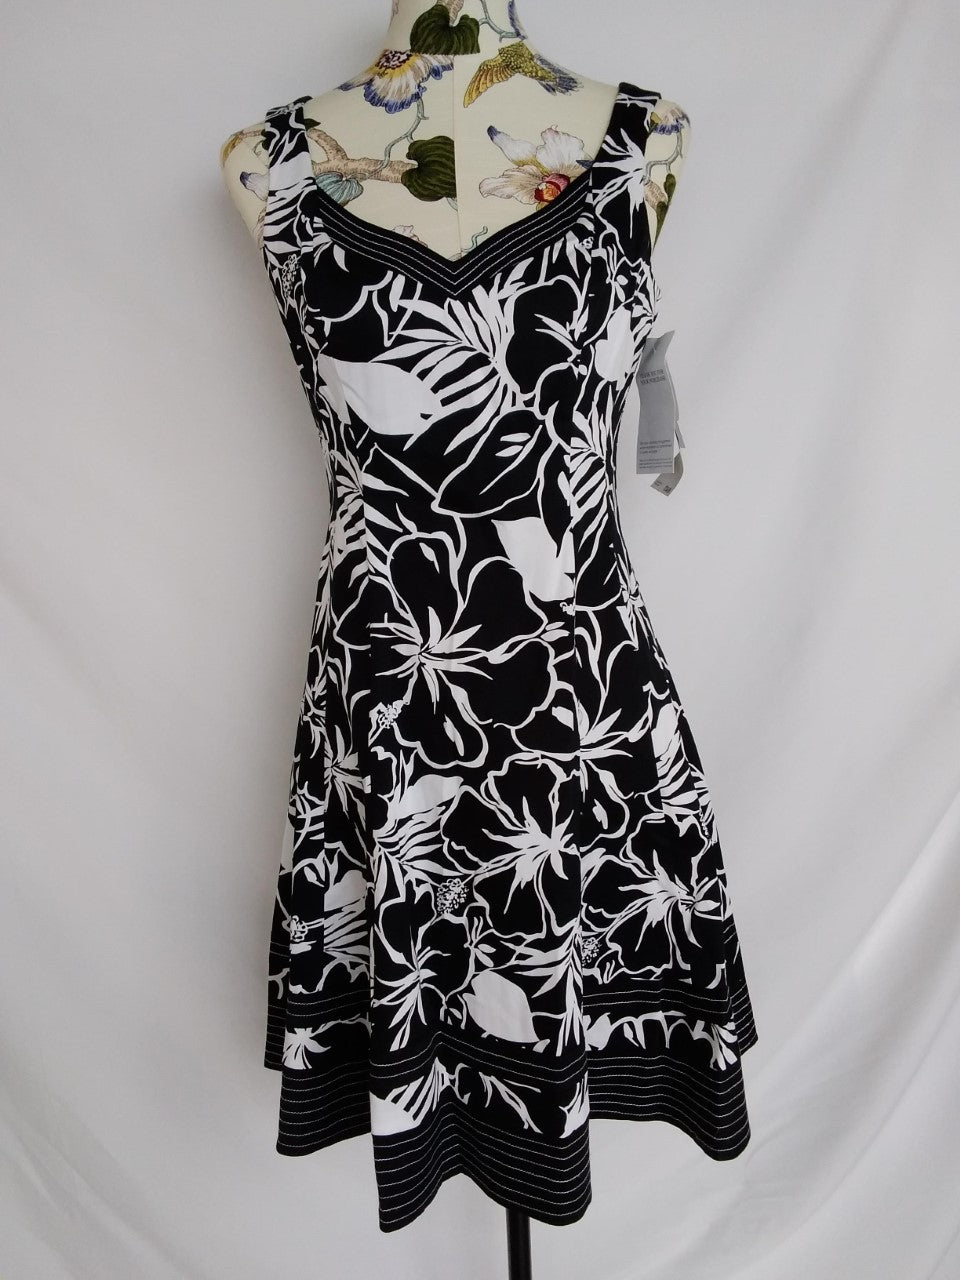 Nine West Black & White Floral Sleeveless V-Neck Dress - 4